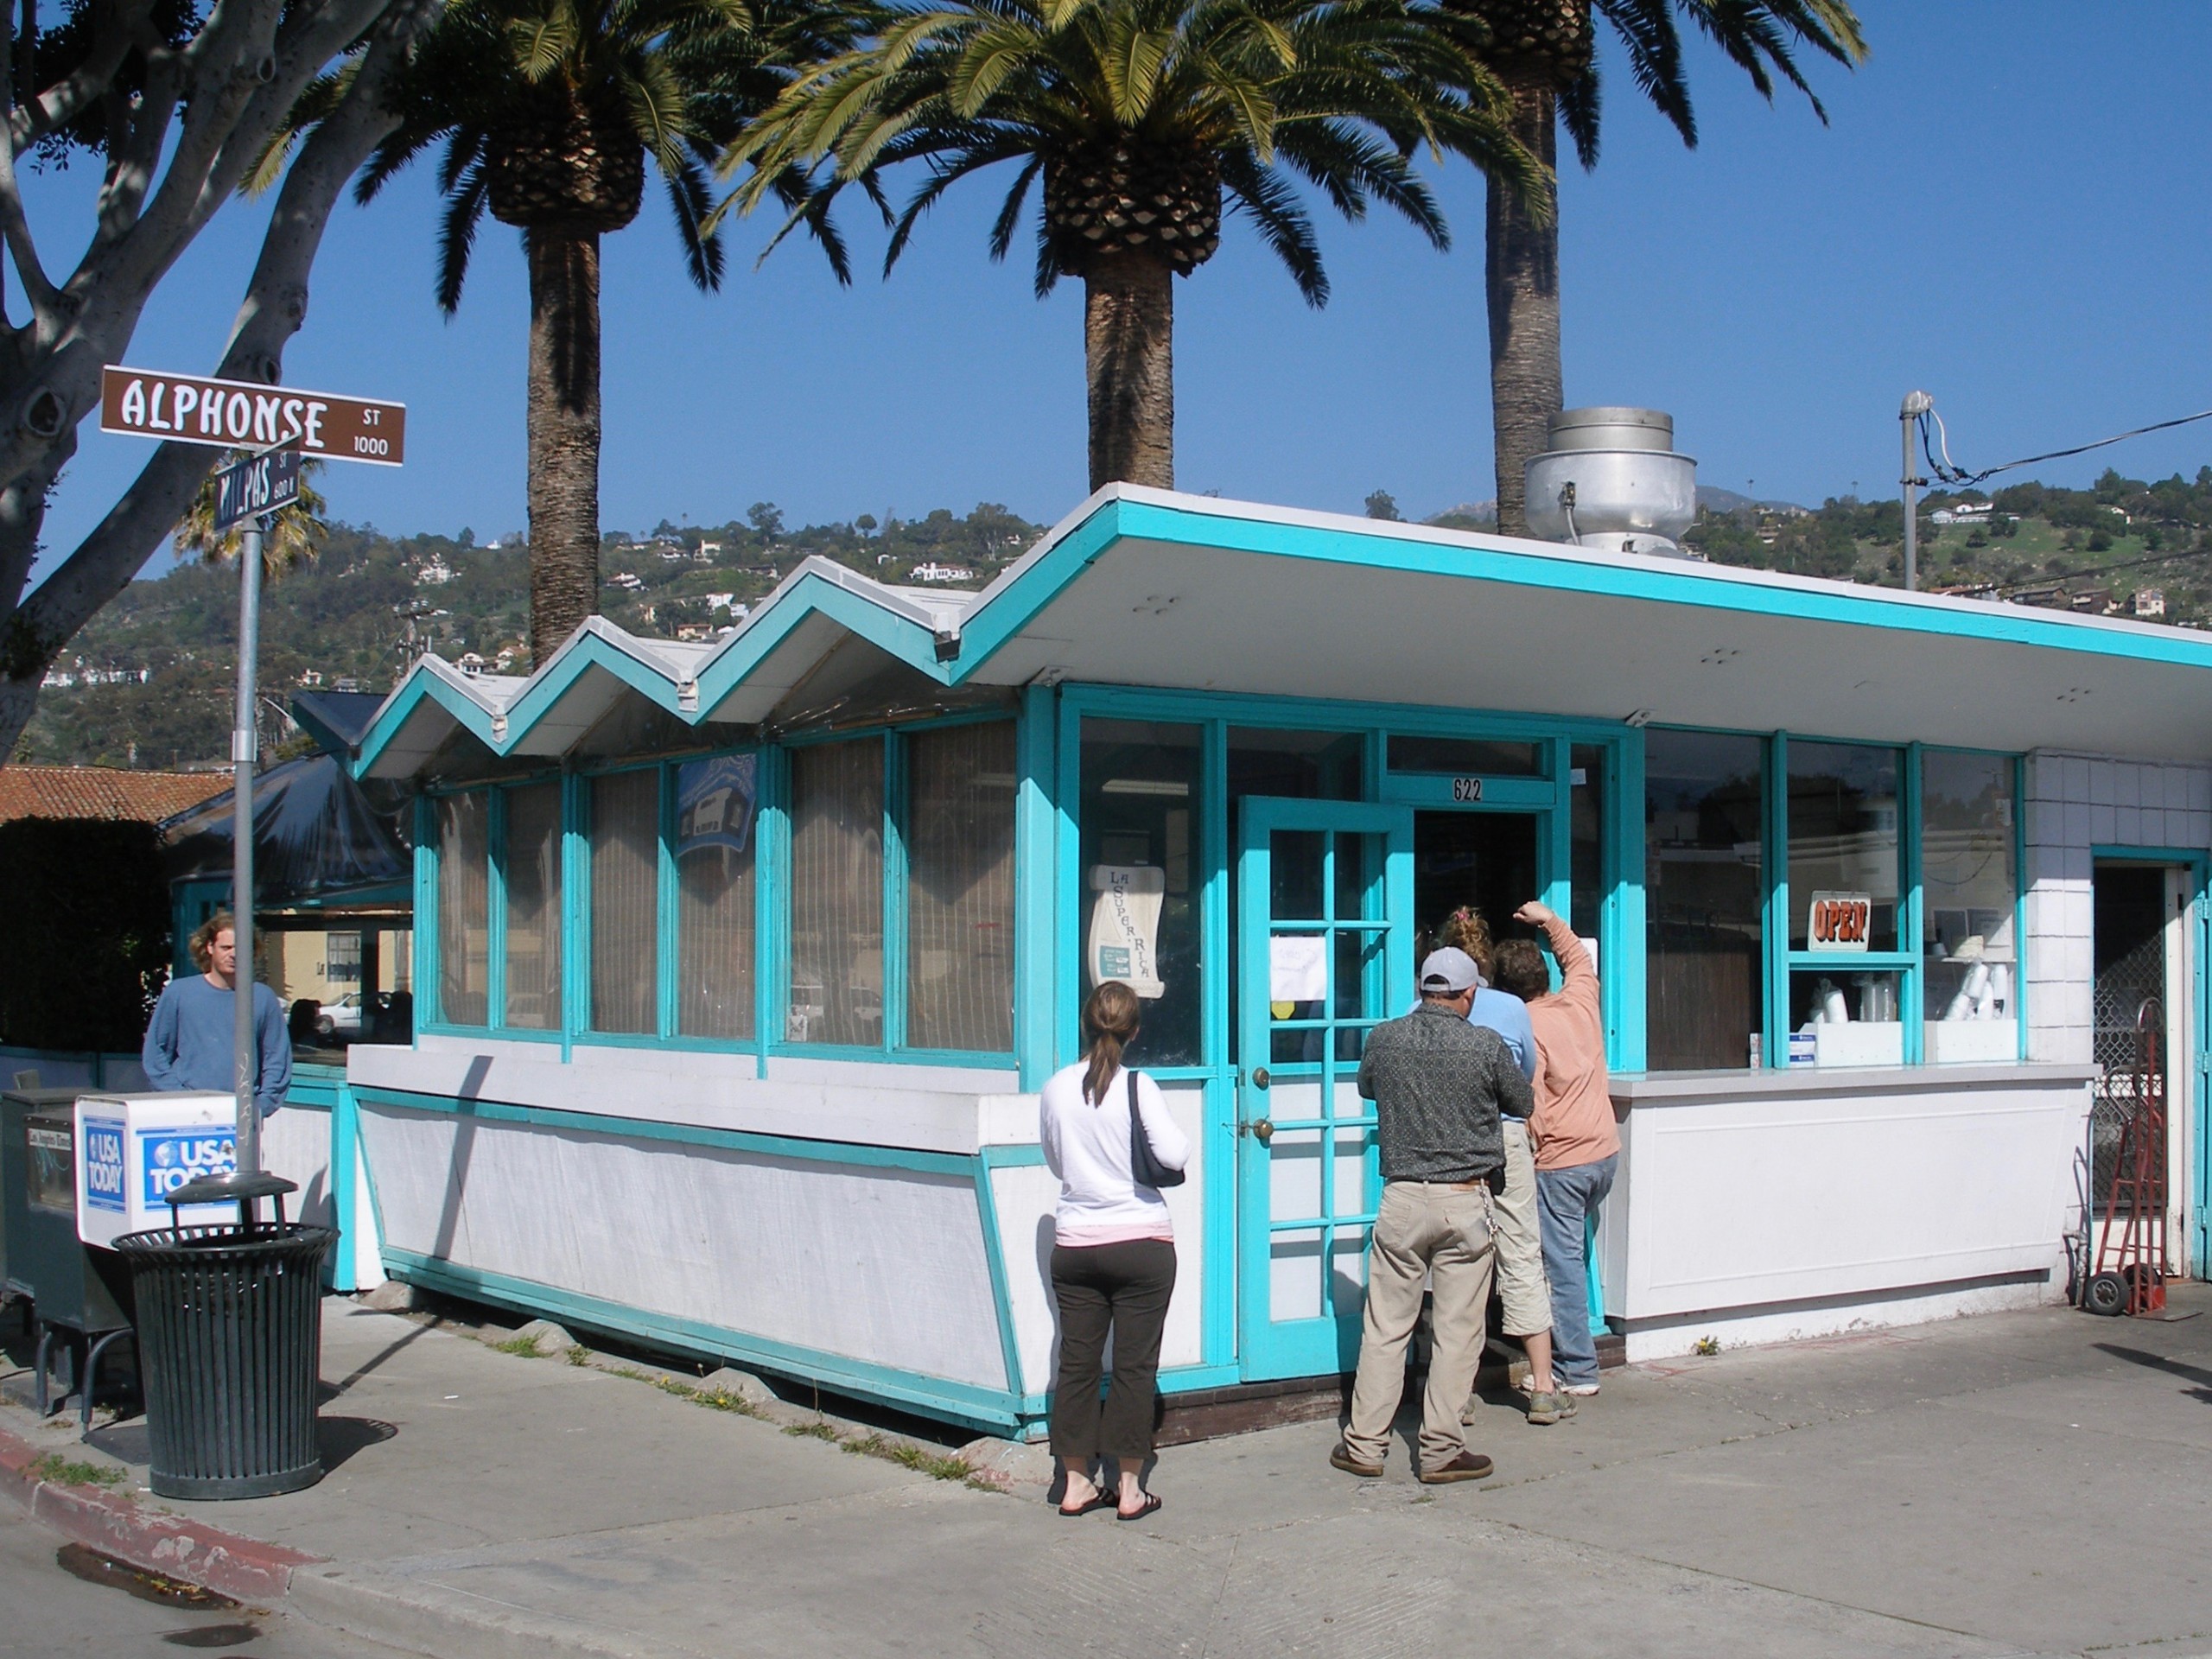 Restaurant Santa Barbara